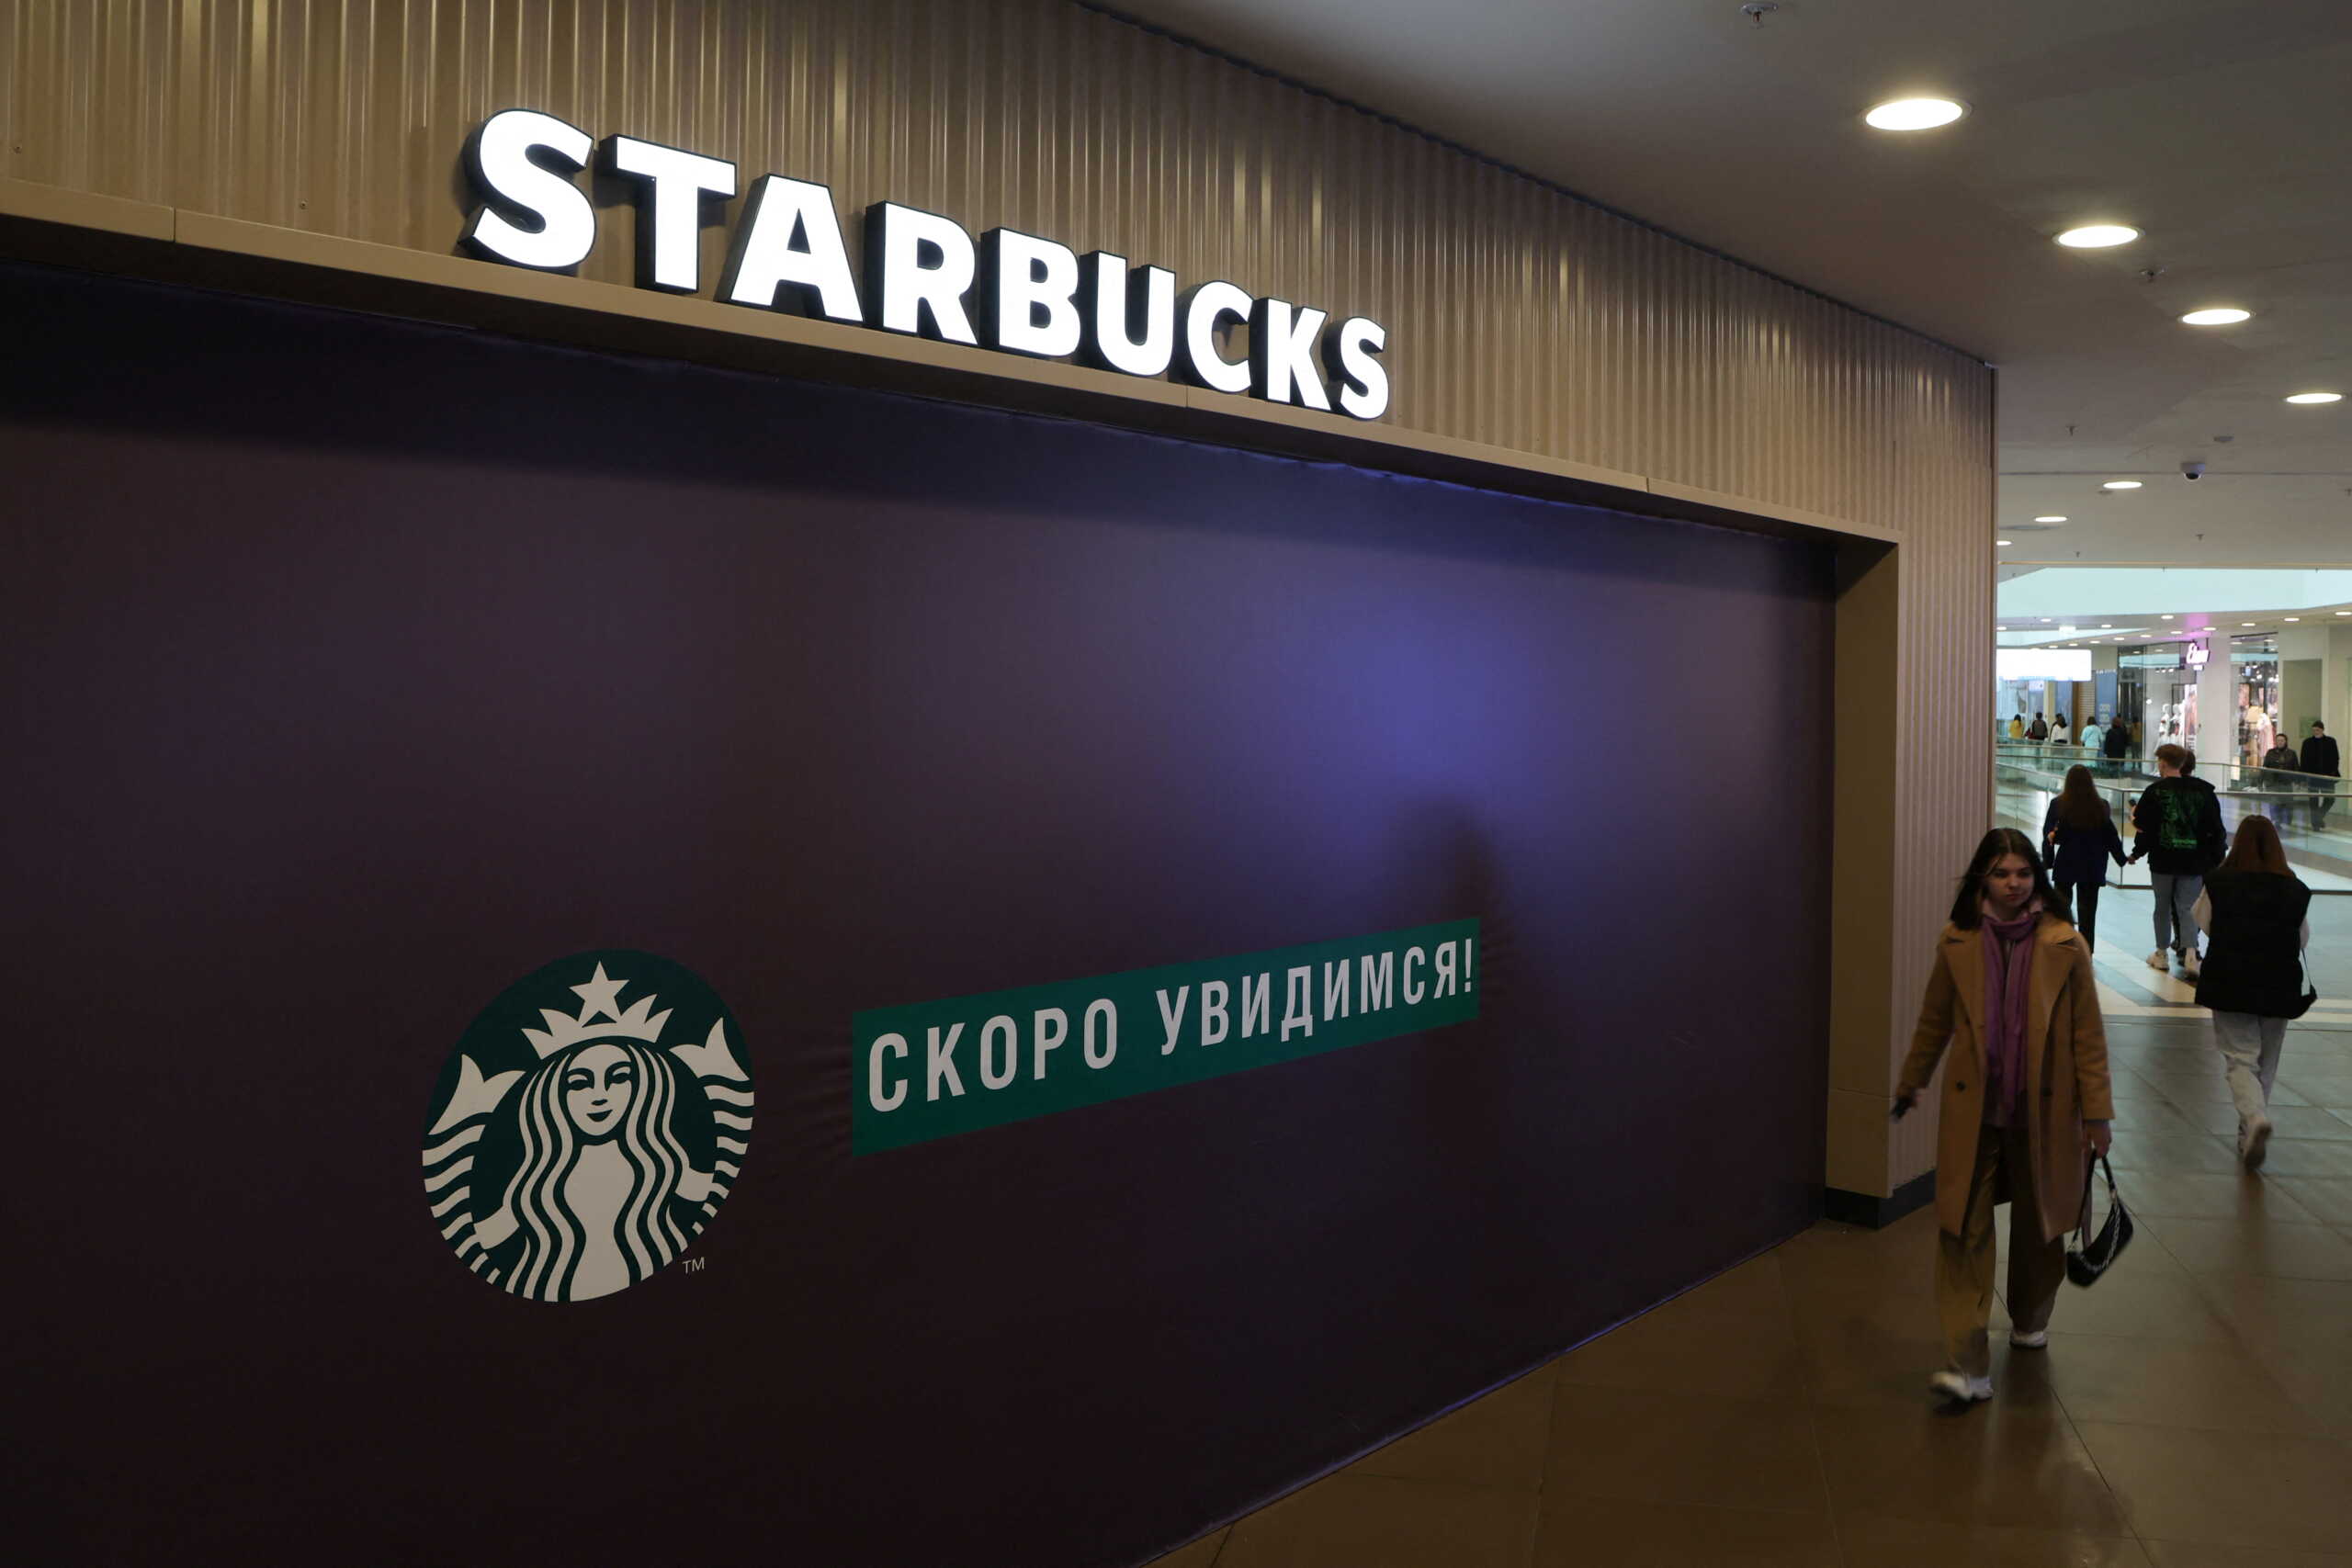 Ρωσία: Τέλος τα Starbucks από τη χώρα μετά από 15 χρόνια